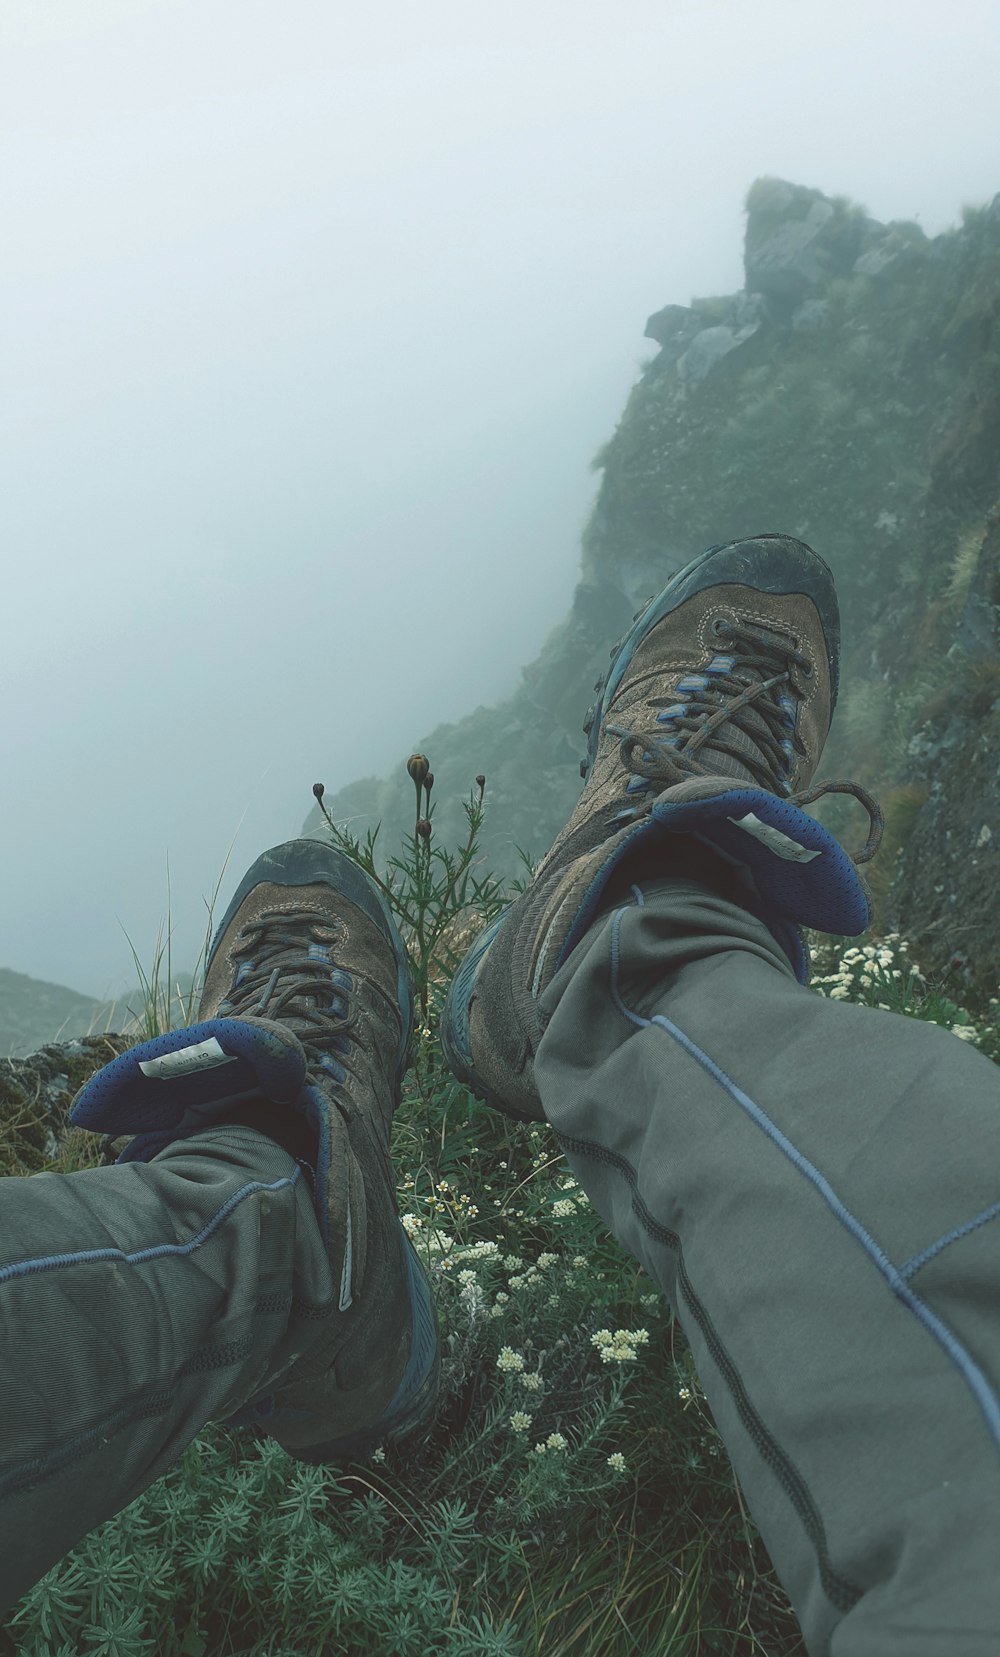 un paio di piedi con attrezzatura da trekking in una giornata nebbiosa